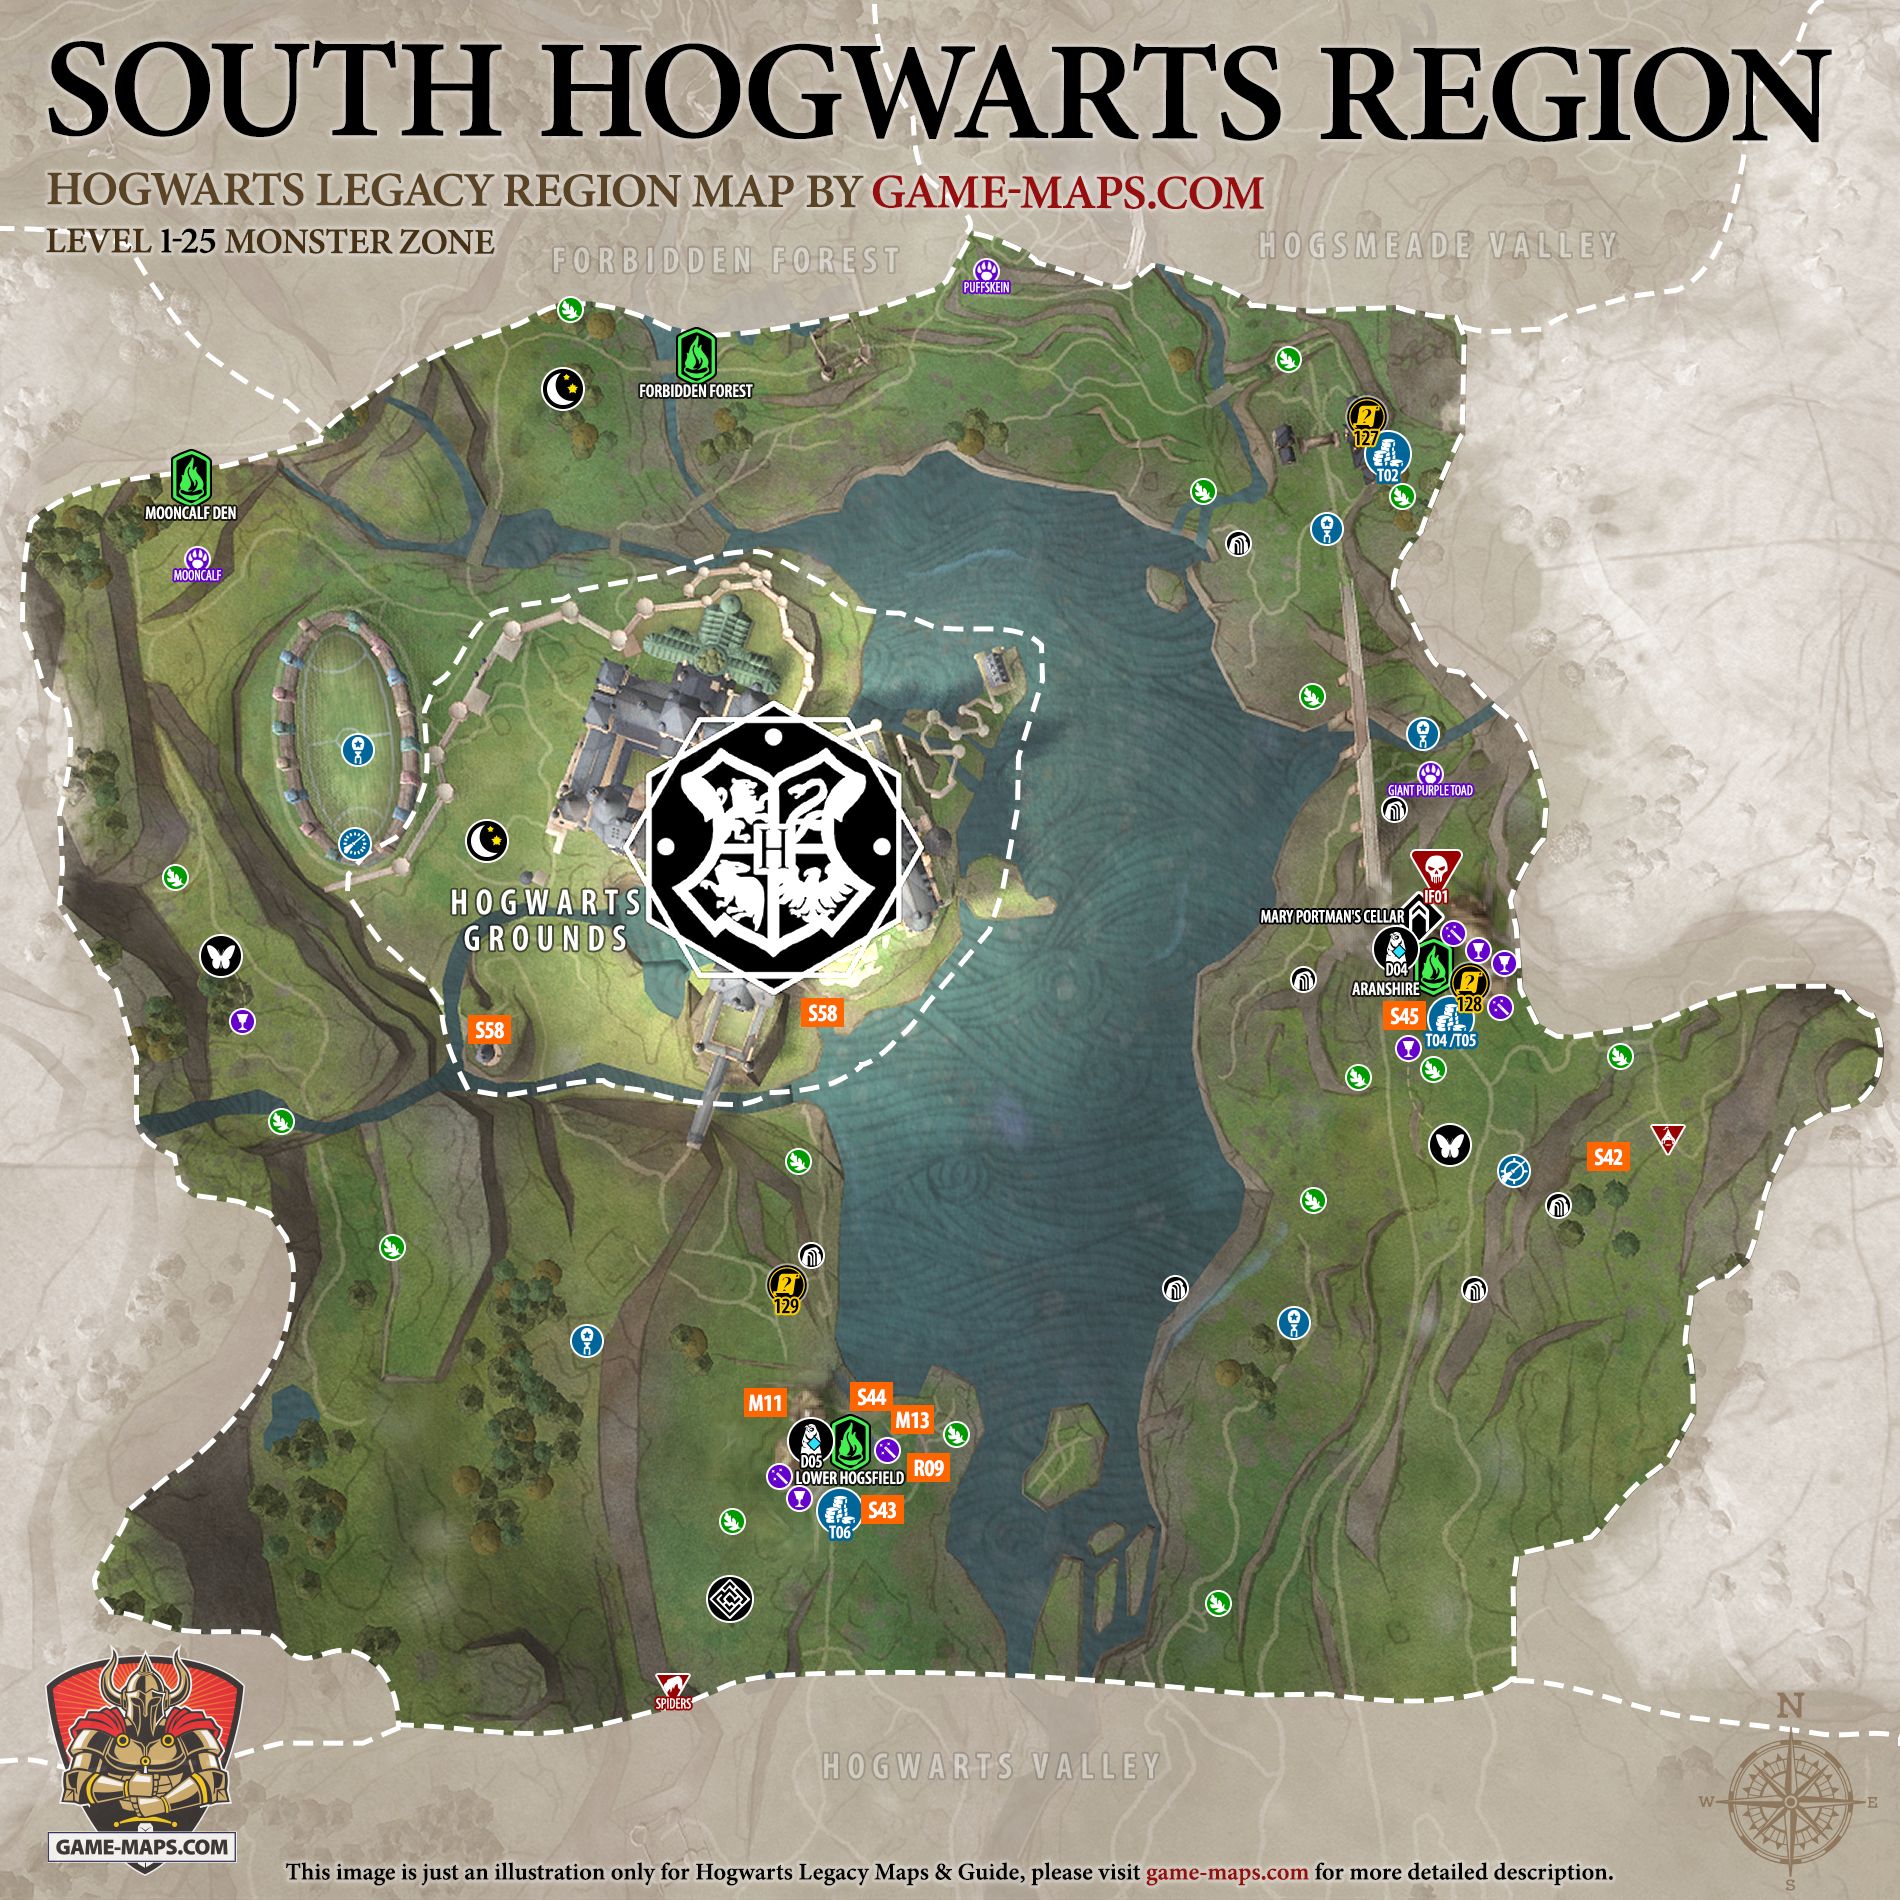 Hogwarts Legacy World Map